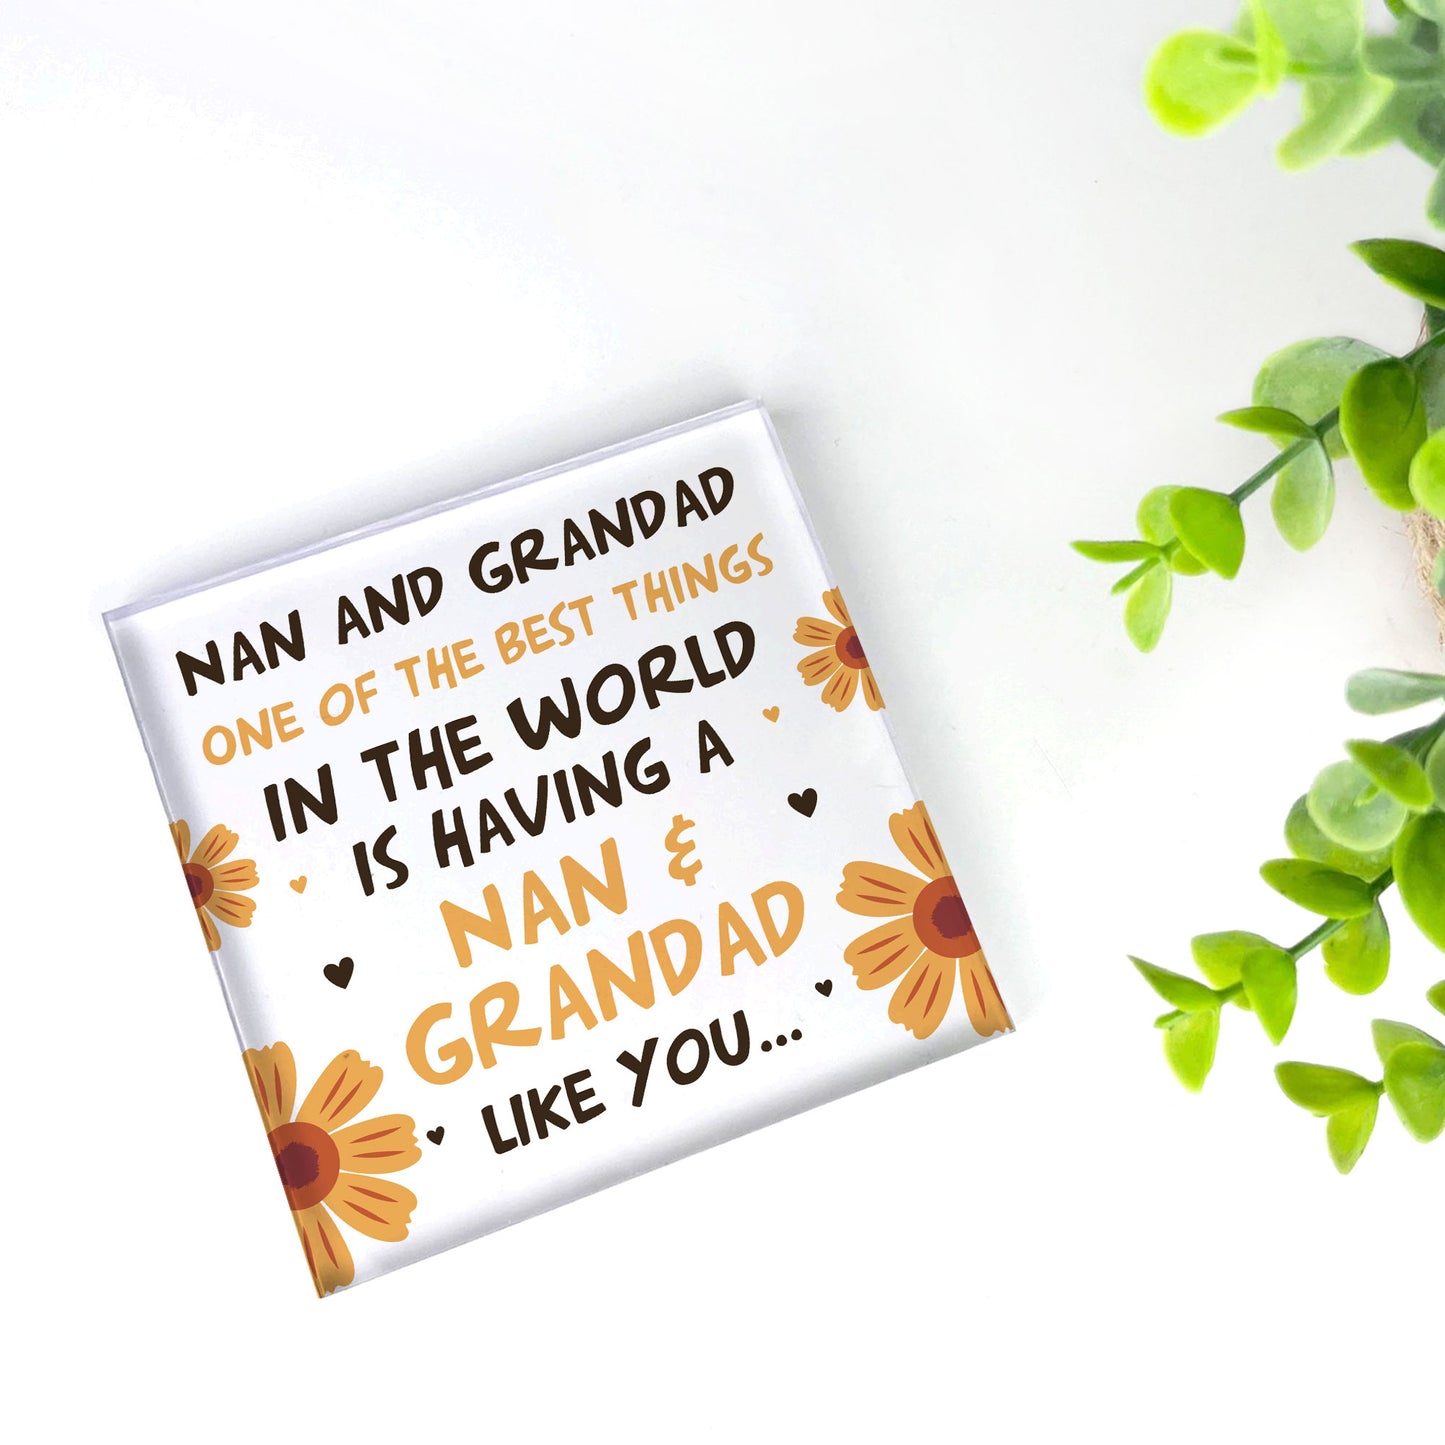 Nan And Grandad Sign Gift For Nan And Grandad Christmas Birthday